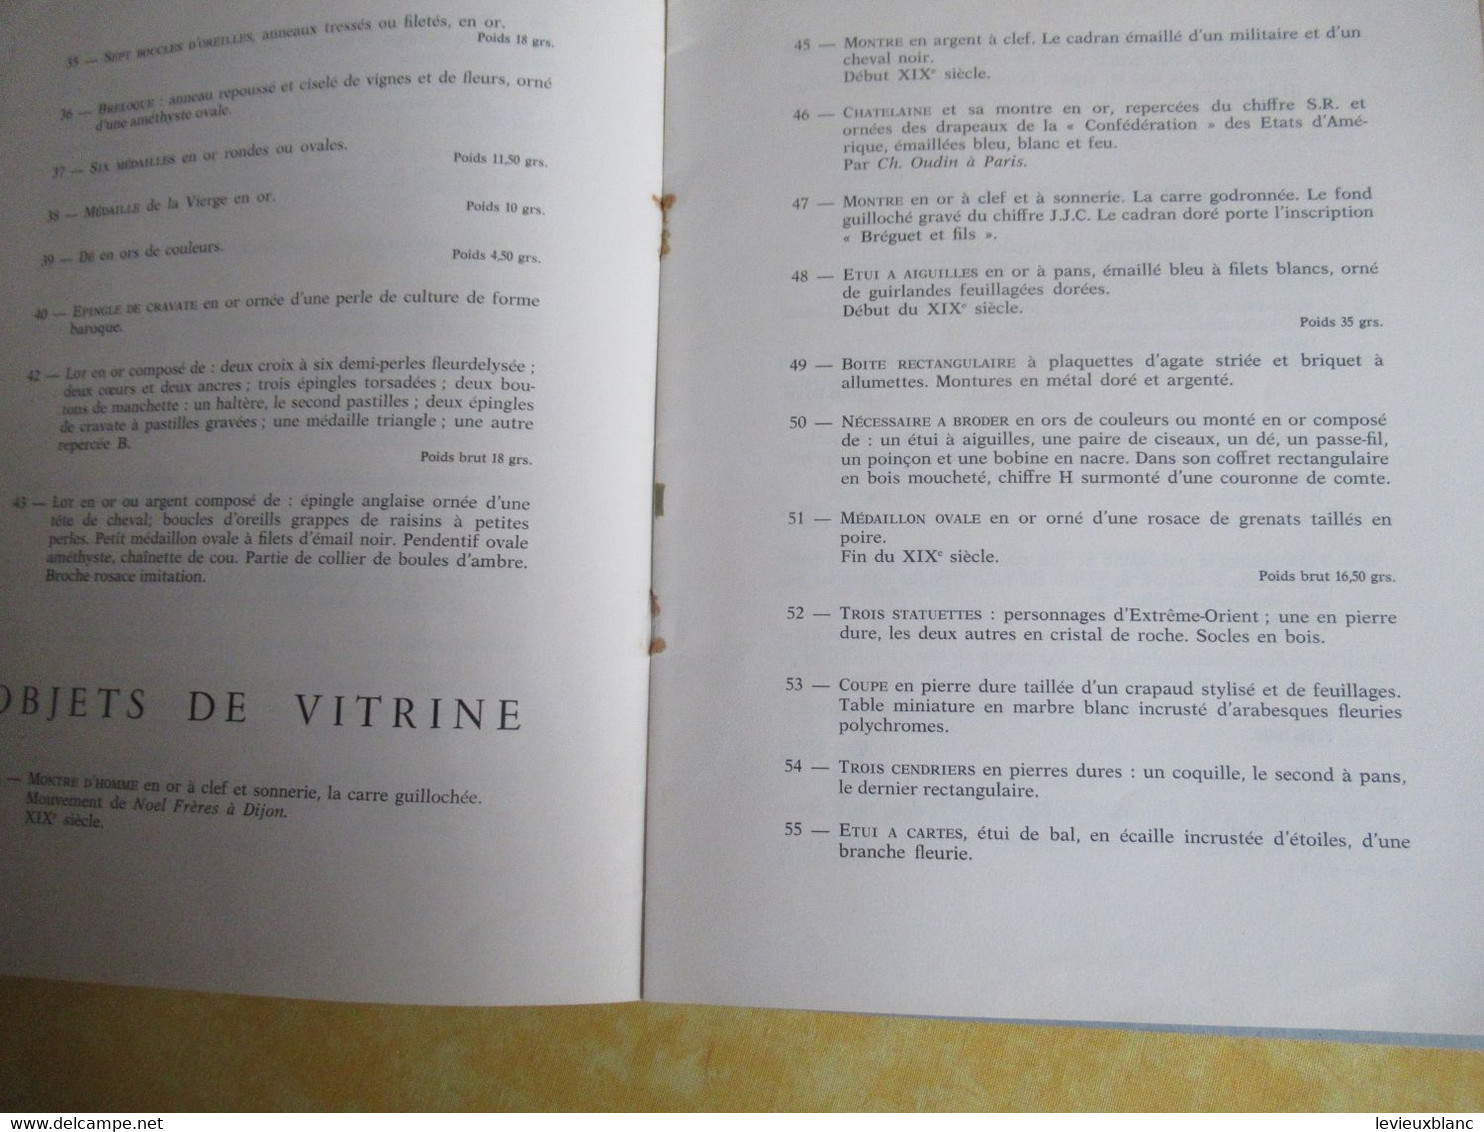 Vente Aux Enchères /Hôtel DROUOT/ Bijoux, Argenterie,Objets De Vitrine / ADER-PICARD/1971  CAT292 - Tijdschriften & Catalogi